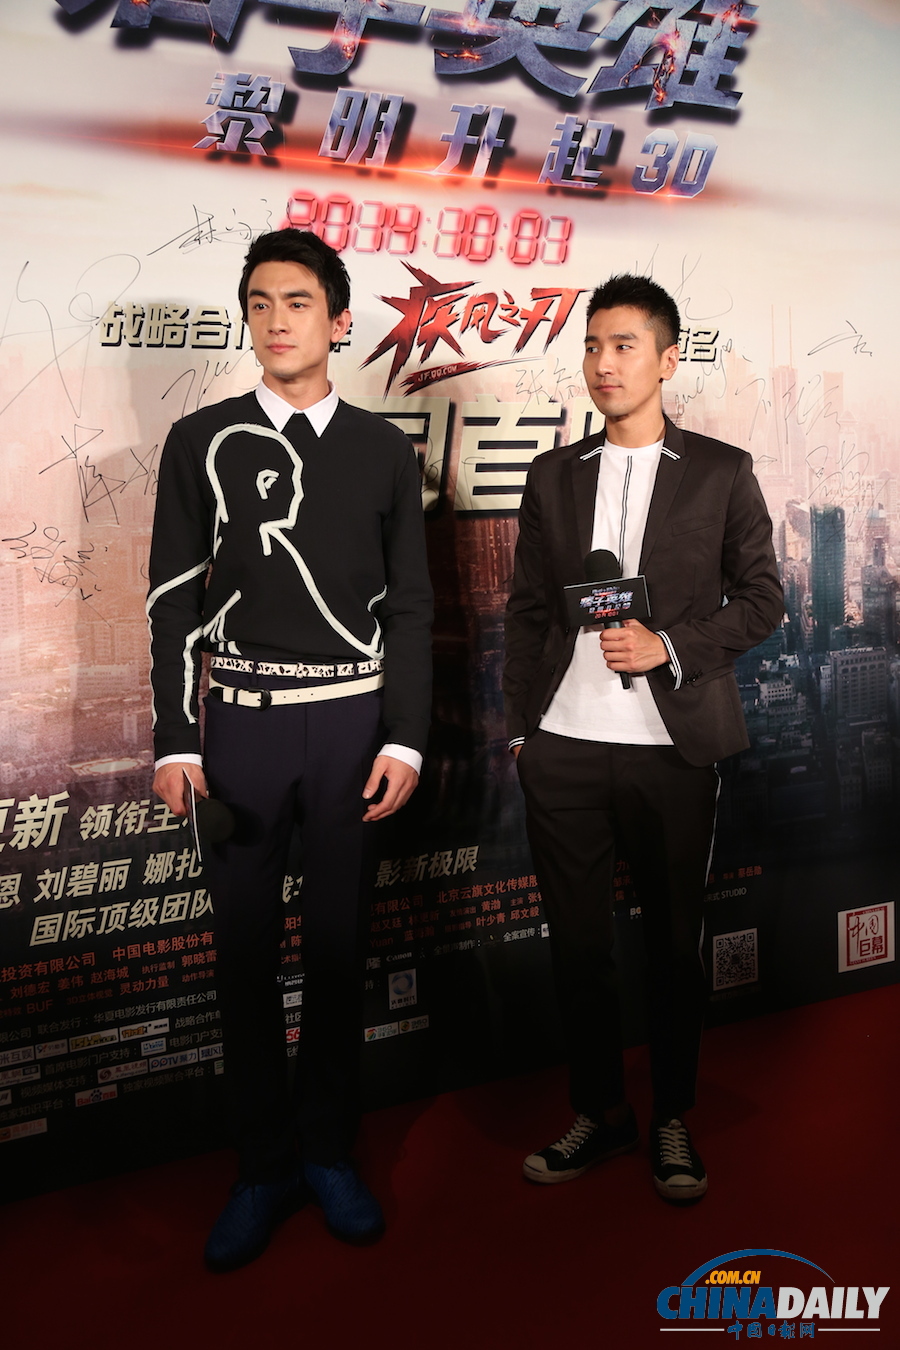 《痞子英雄2》首映红毯仪式在京举行 众主创期